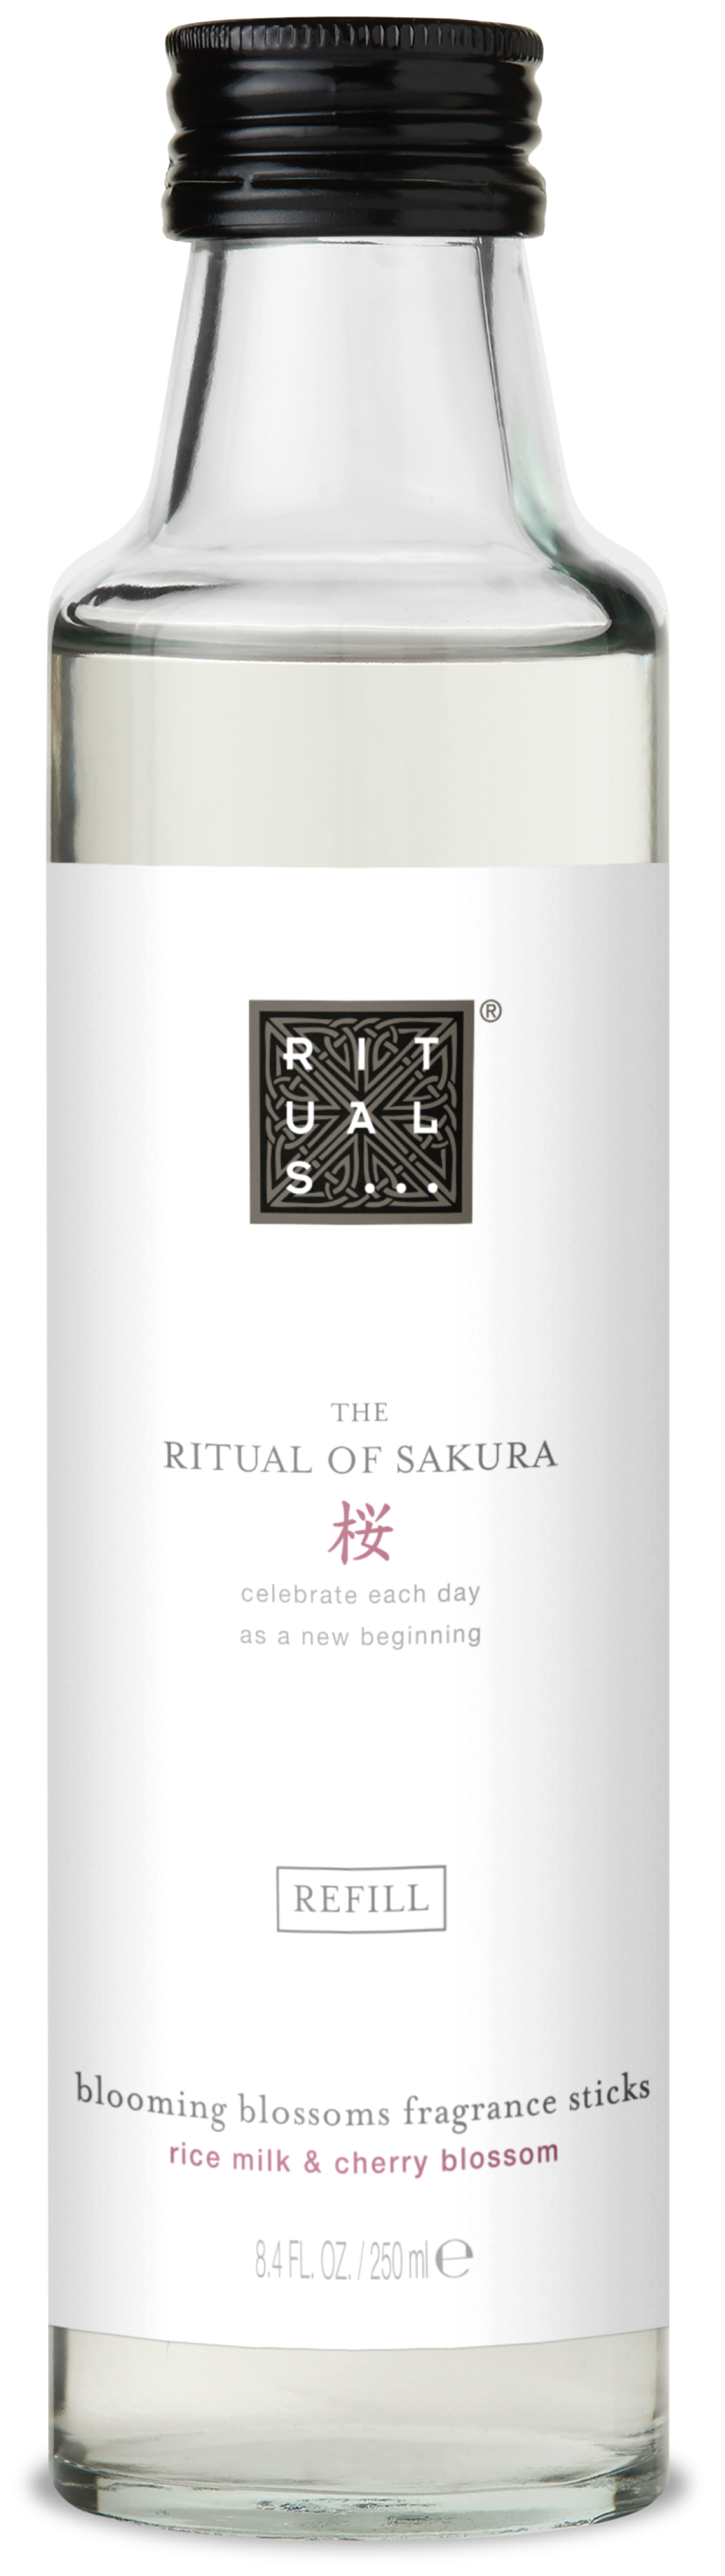 Rituals The Ritual Of Sakura Home Fragrance doftstickor påfyllningflaska rismjölk och körsbärsblomma. Vätskan räcker i ca tre månader. Flaskan kostar 275 kr hos Lyko.